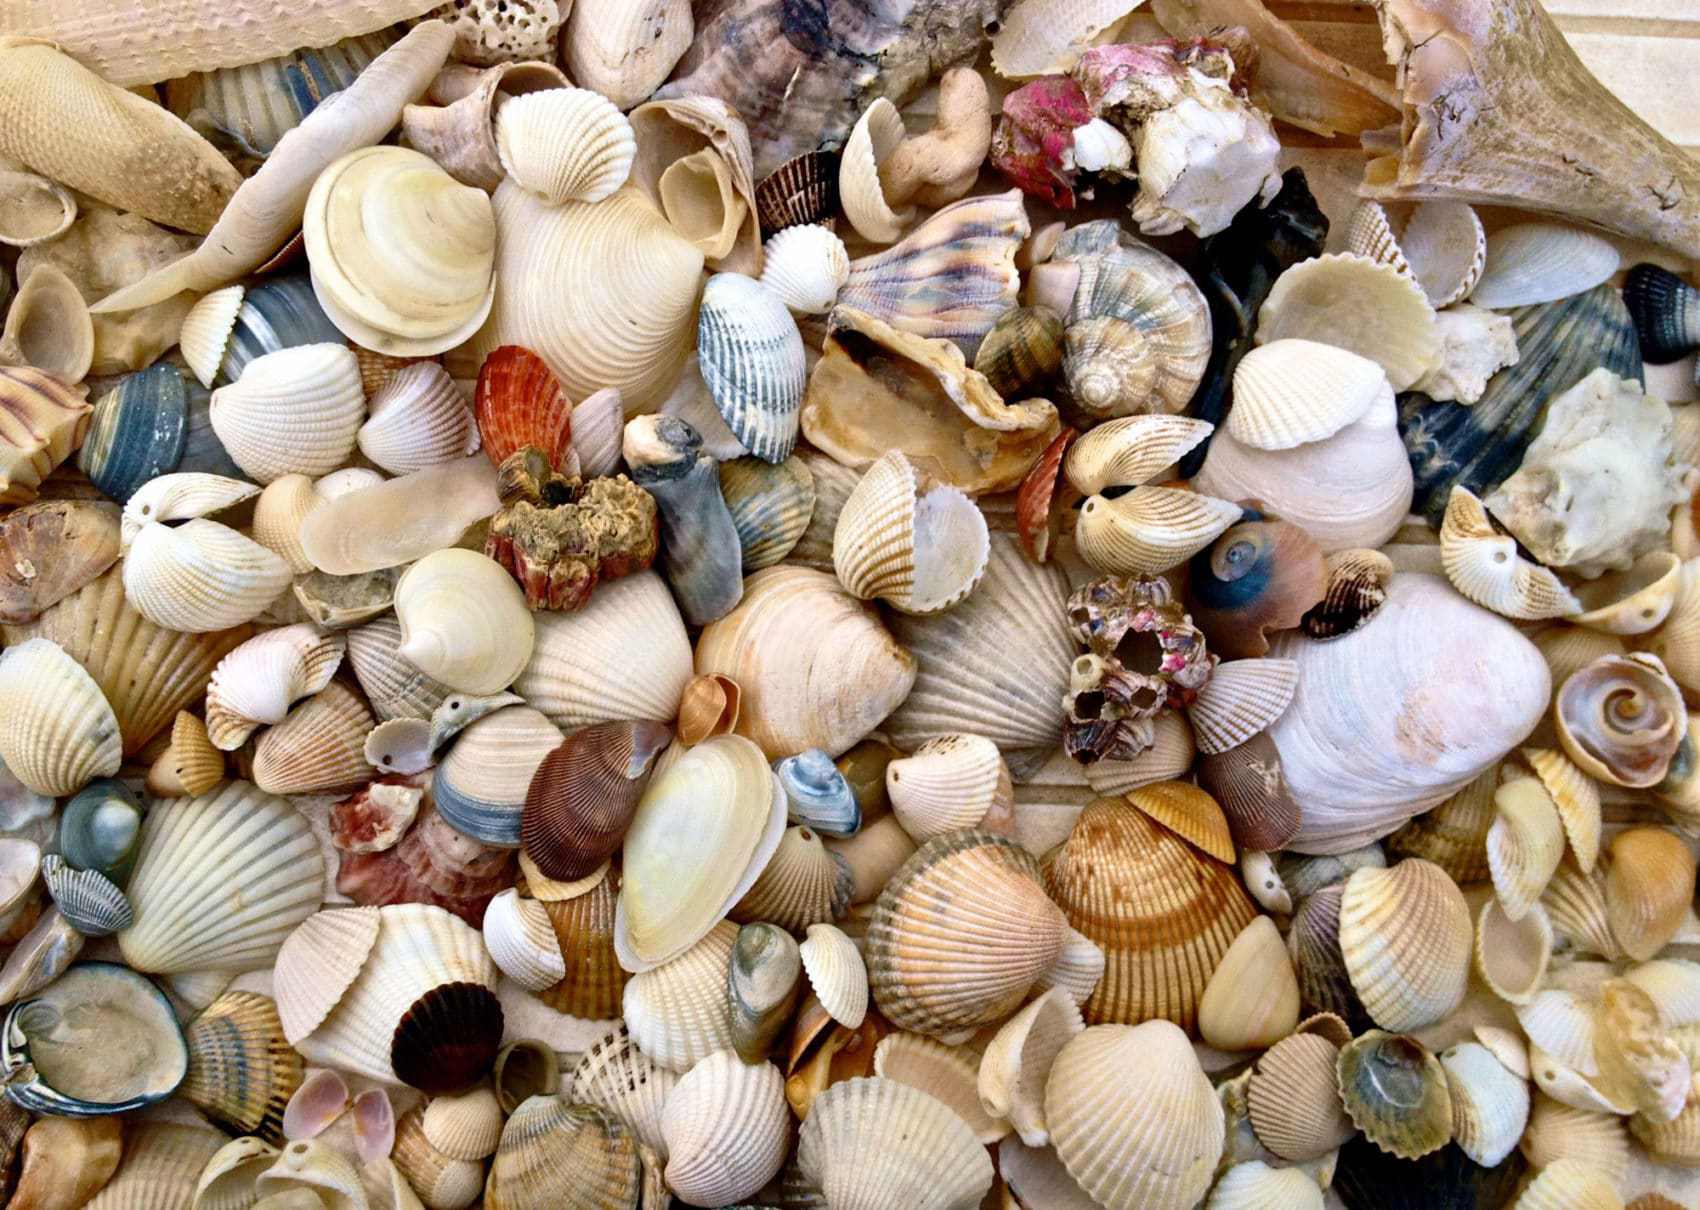 The Life of a Seashell in Cabarete, Dominican Republic